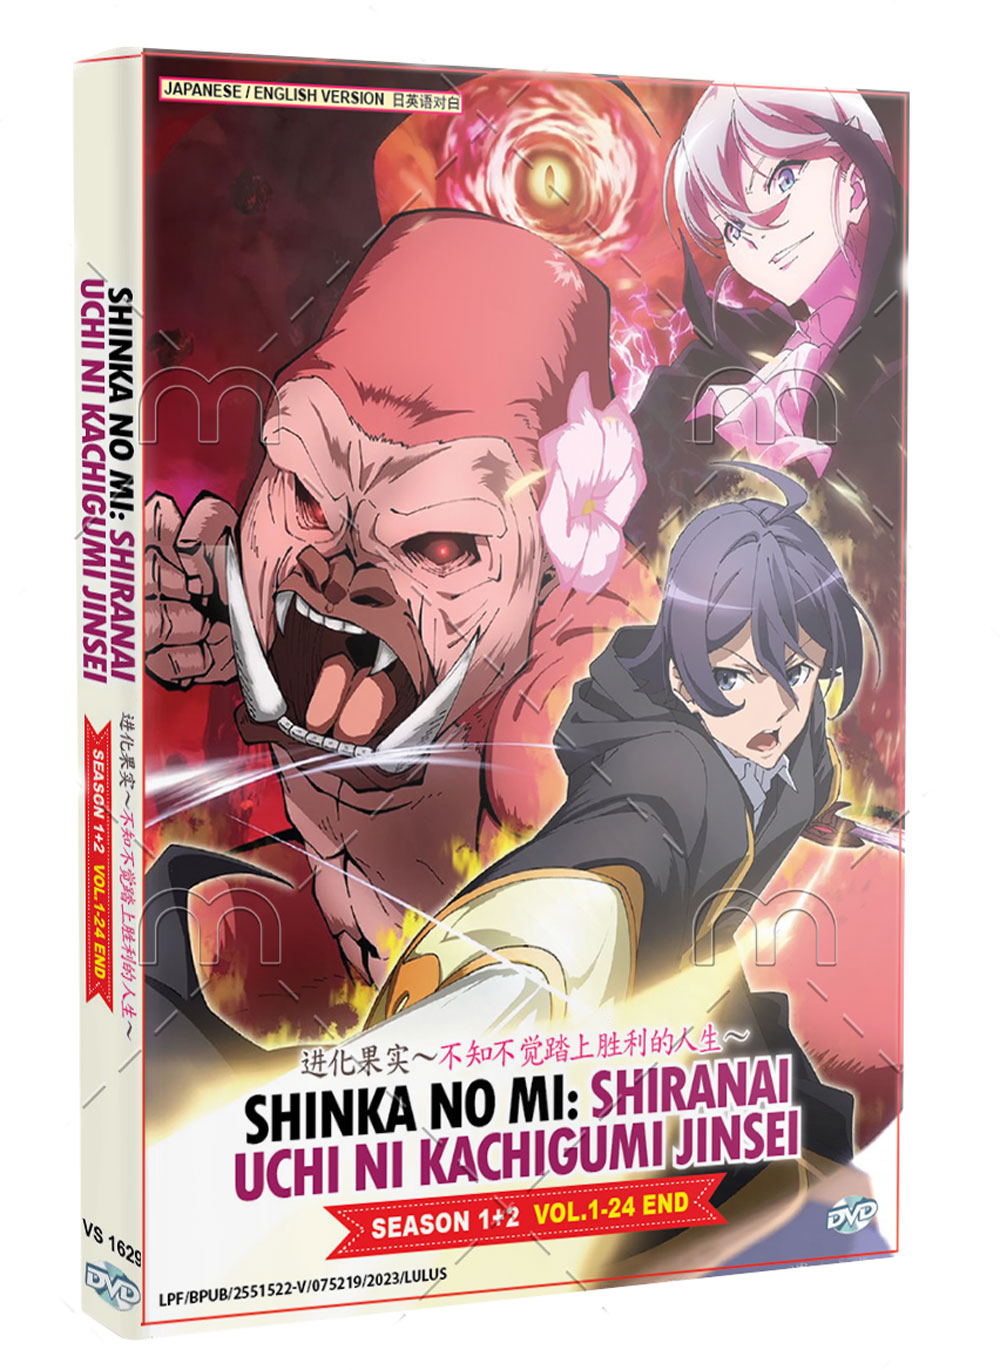 Shin Shinka no Mi: Shiranai Uchi ni Kachigumi.. v2 by Pikri4869 on